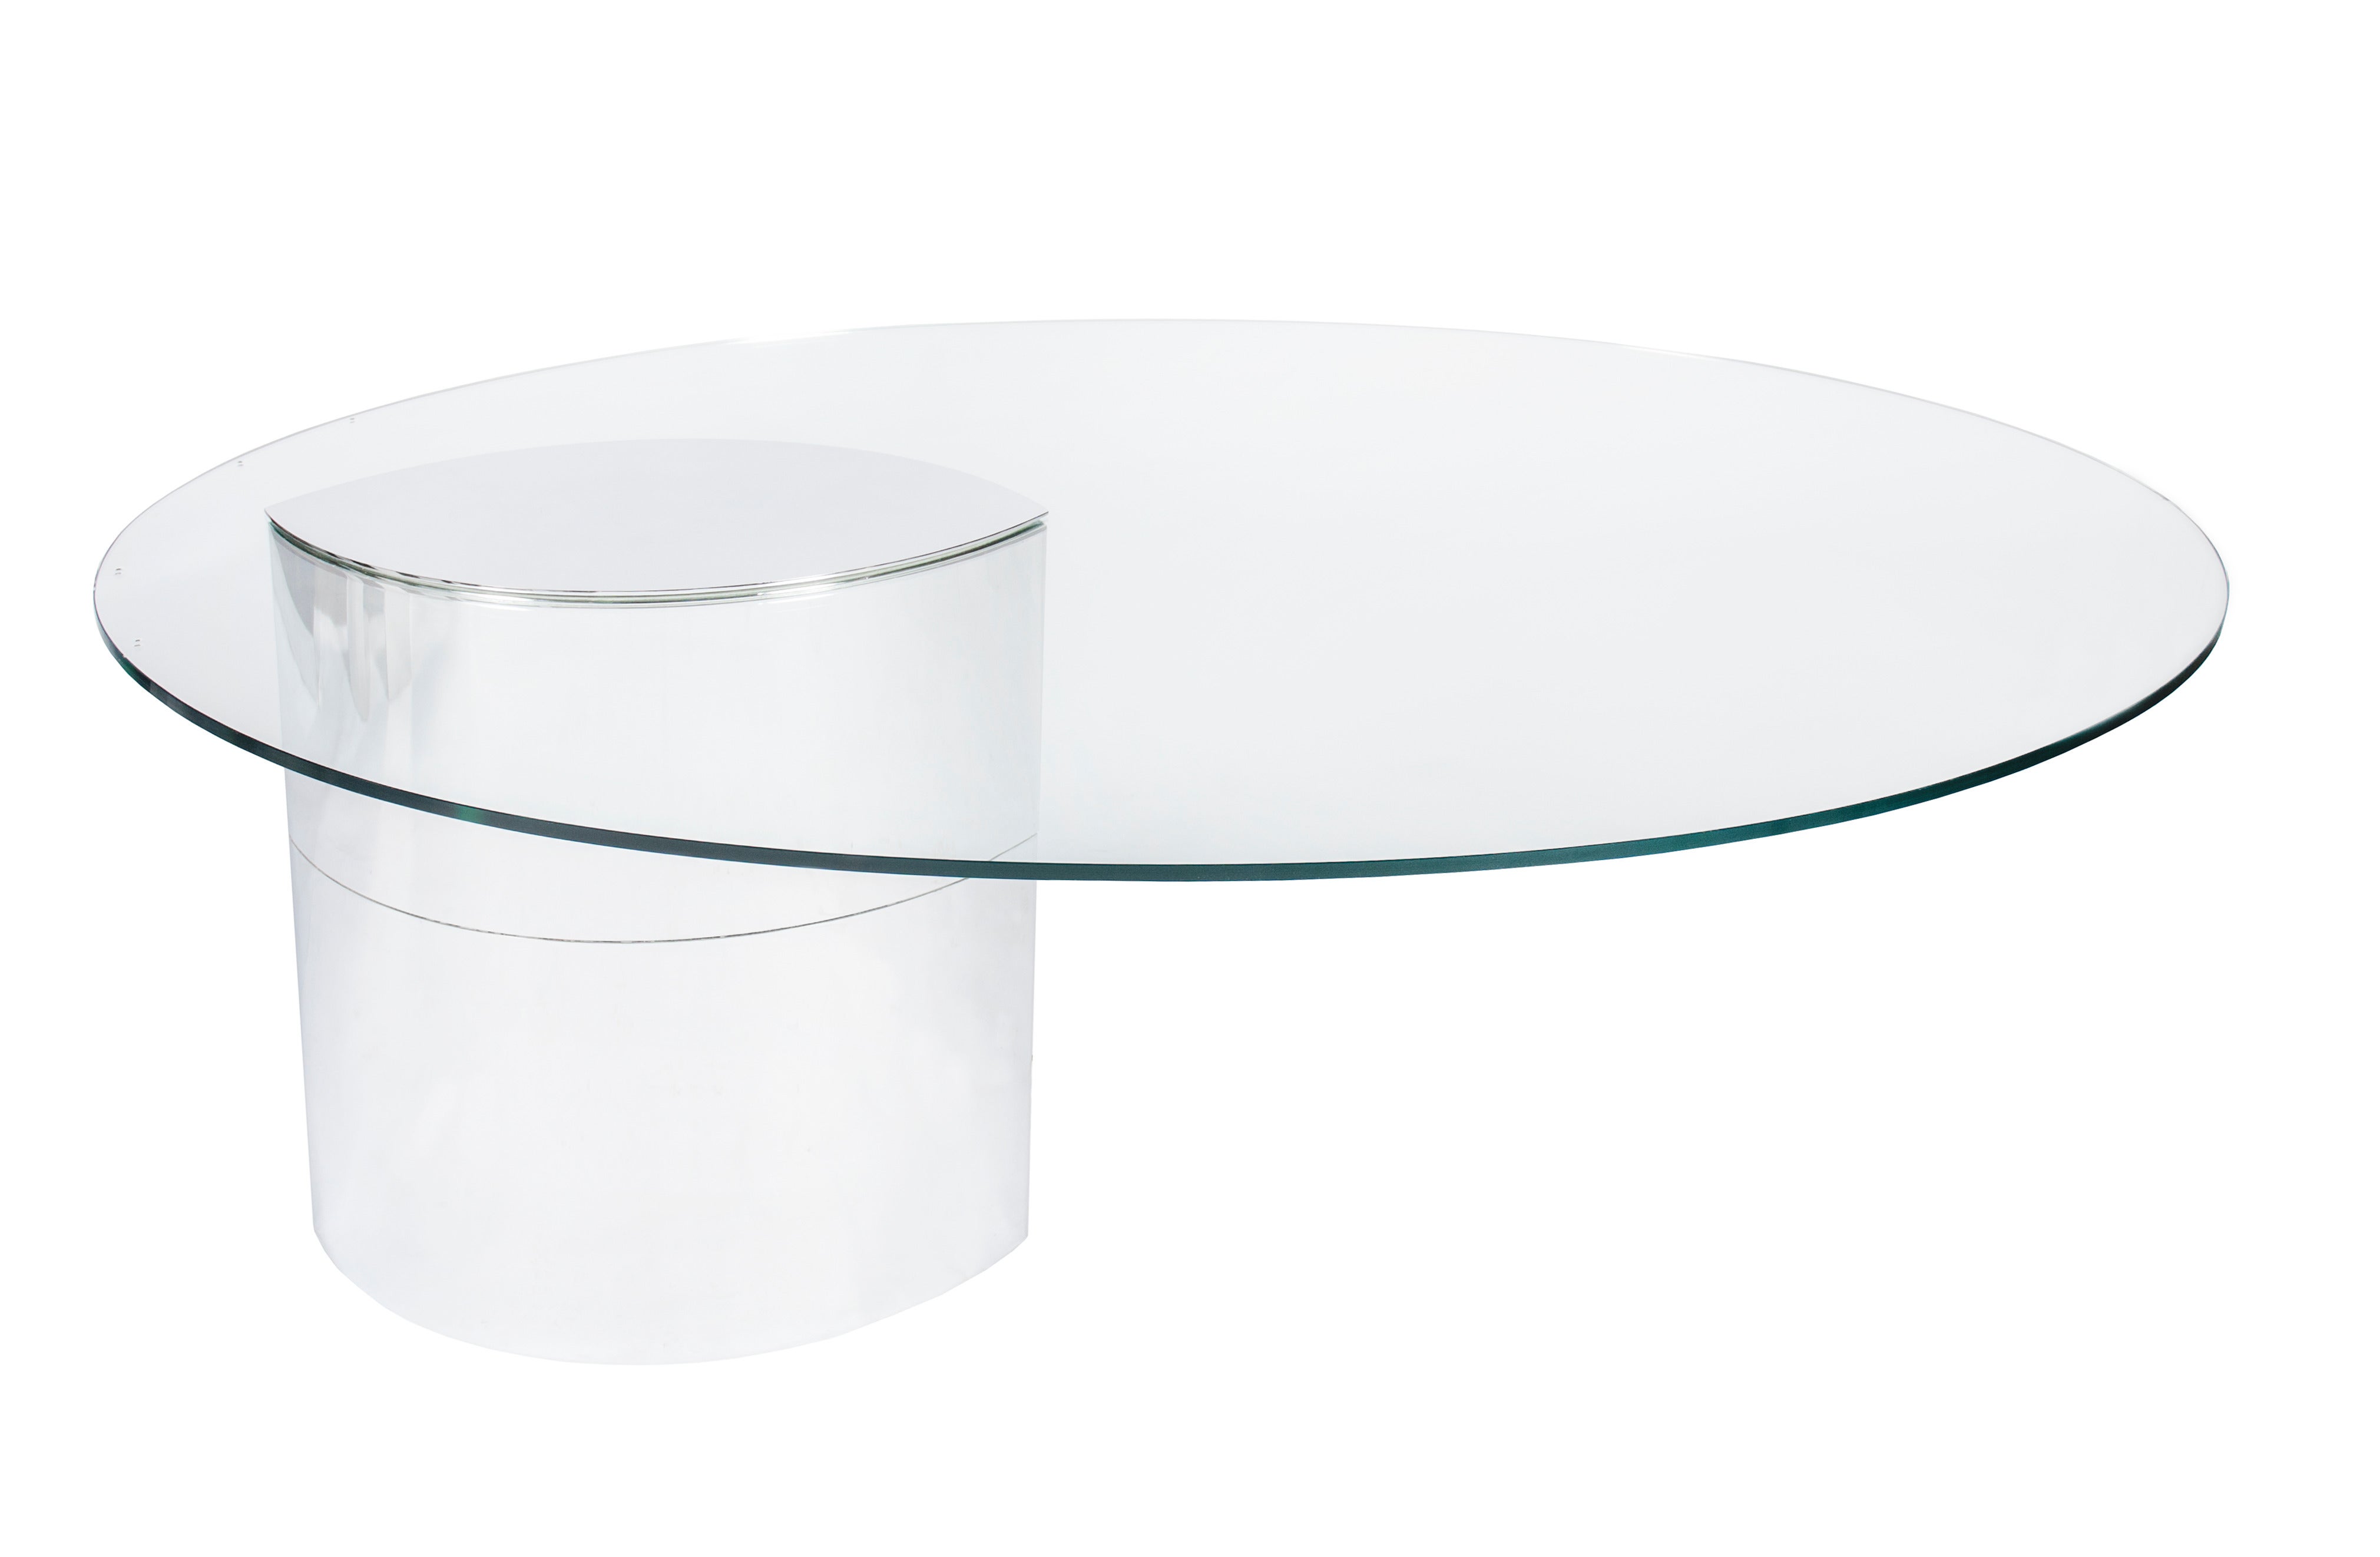 Cini Boeri "Lunario" Cantilevered Glass Desk